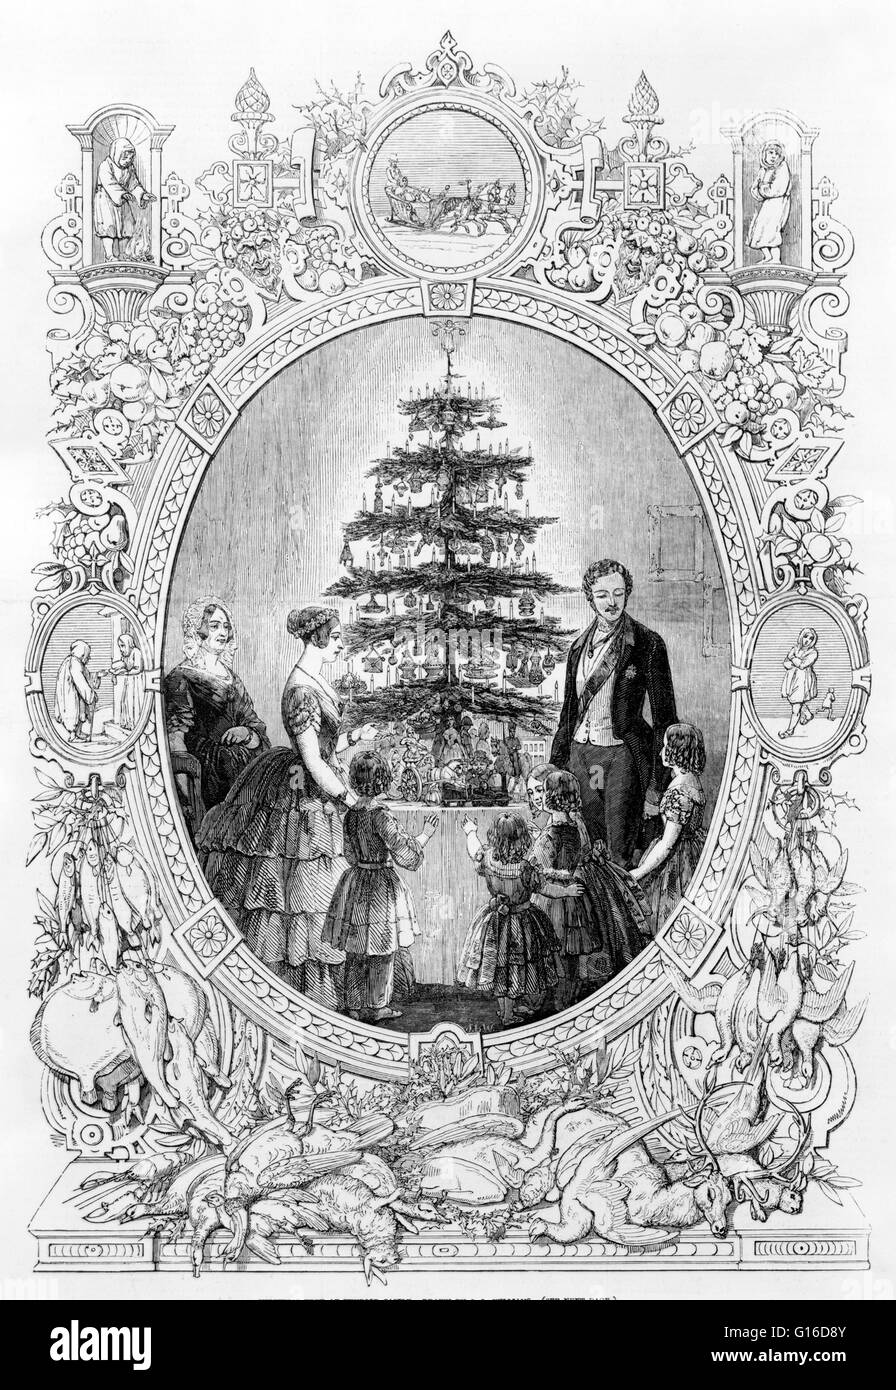 Intitulé : 'arbre de Noël au château de Windsor' gravure de la famille royale autour d'arbre de Noël, représenté dans un ovale avec bordure montrant des scènes d'hiver et les fruits et les animaux d'une récolte abondante. Un arbre de Noël est un arbre décoré, habituellement une eve Banque D'Images